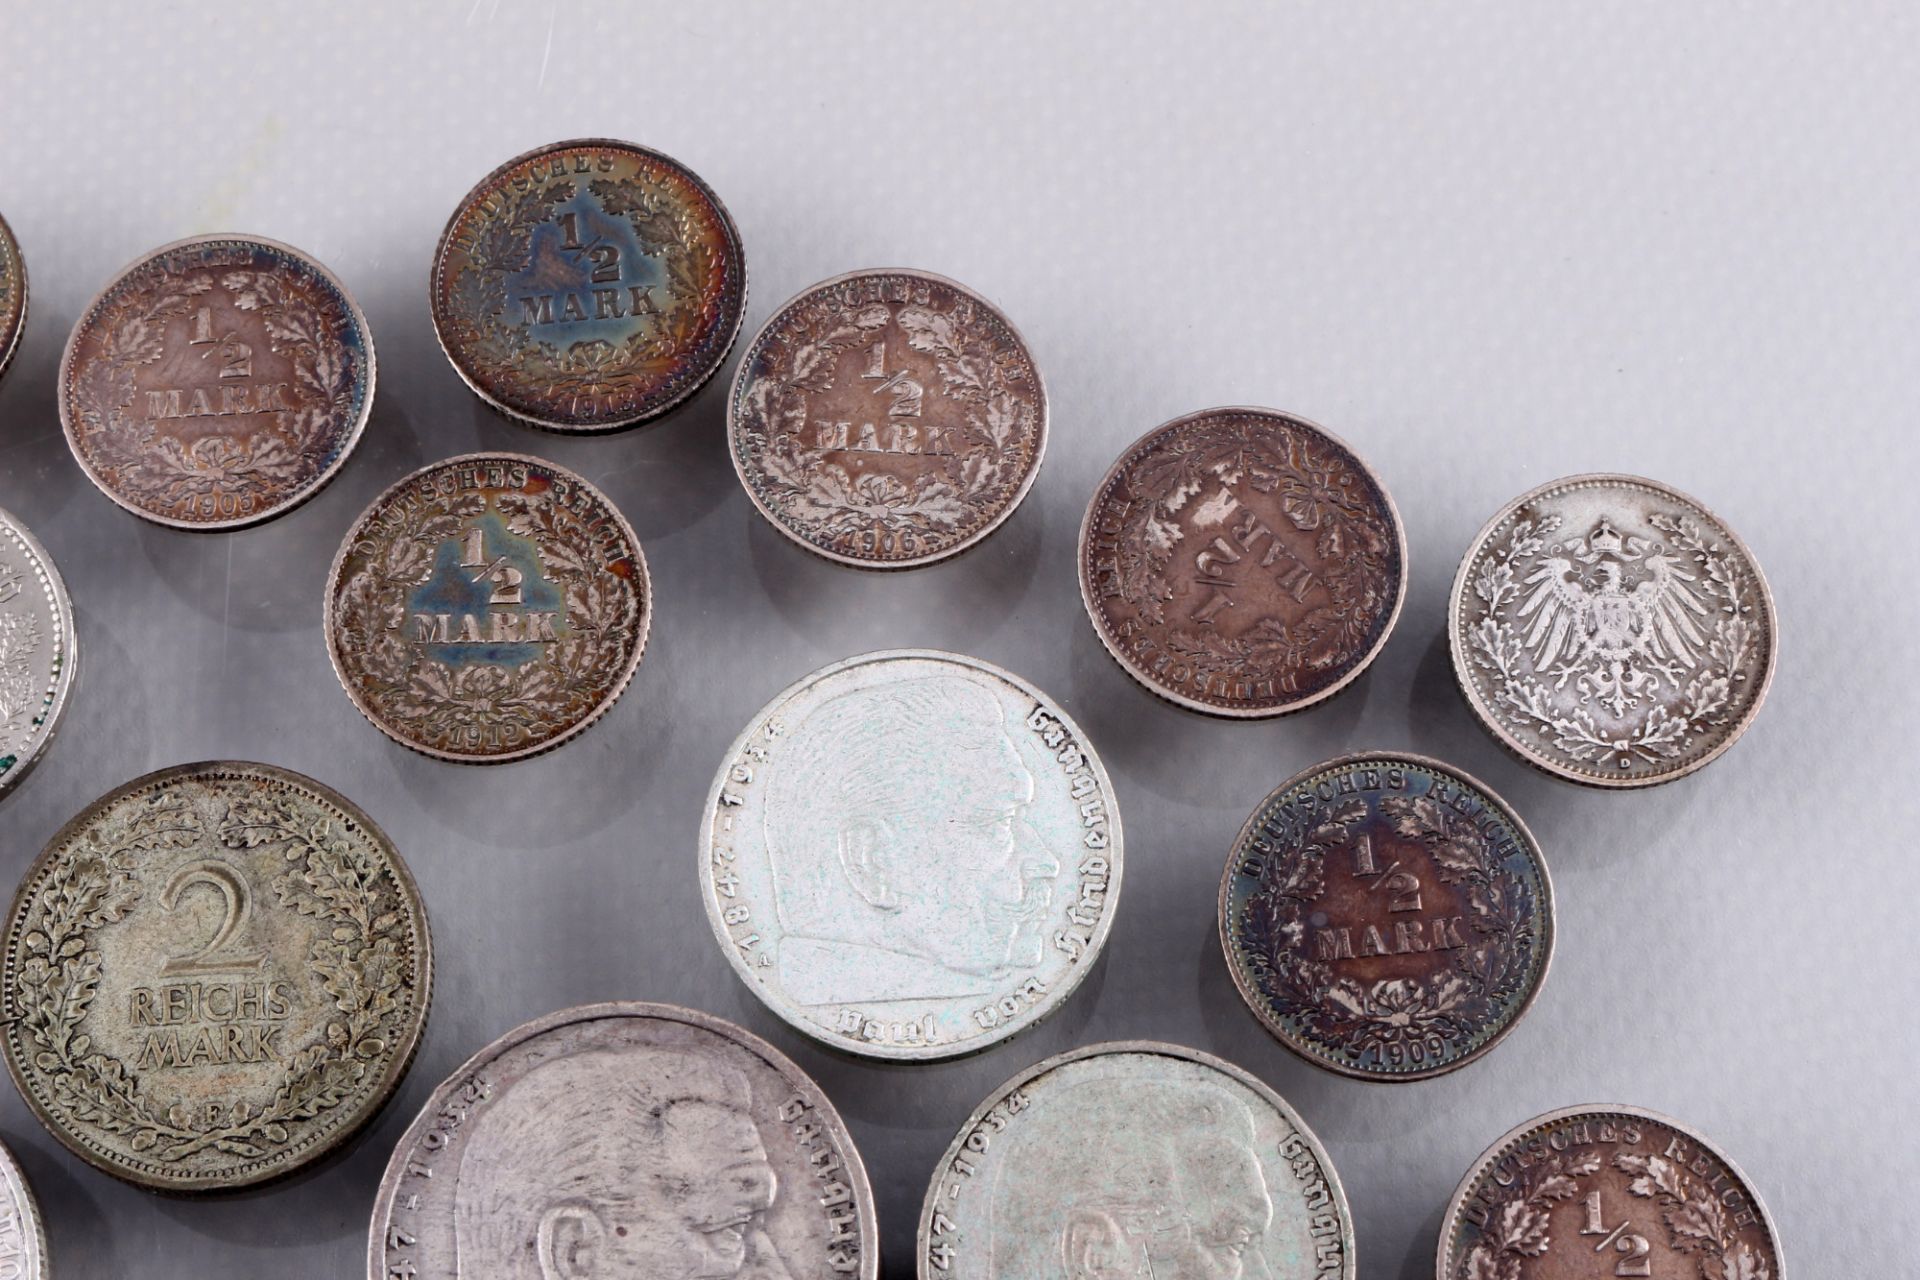 26 Silbermünzen - Deutsche Mark 1894-1939 Kaiserreich, 26 silver coins - German Mark 1894-1939 Empir - Bild 3 aus 6